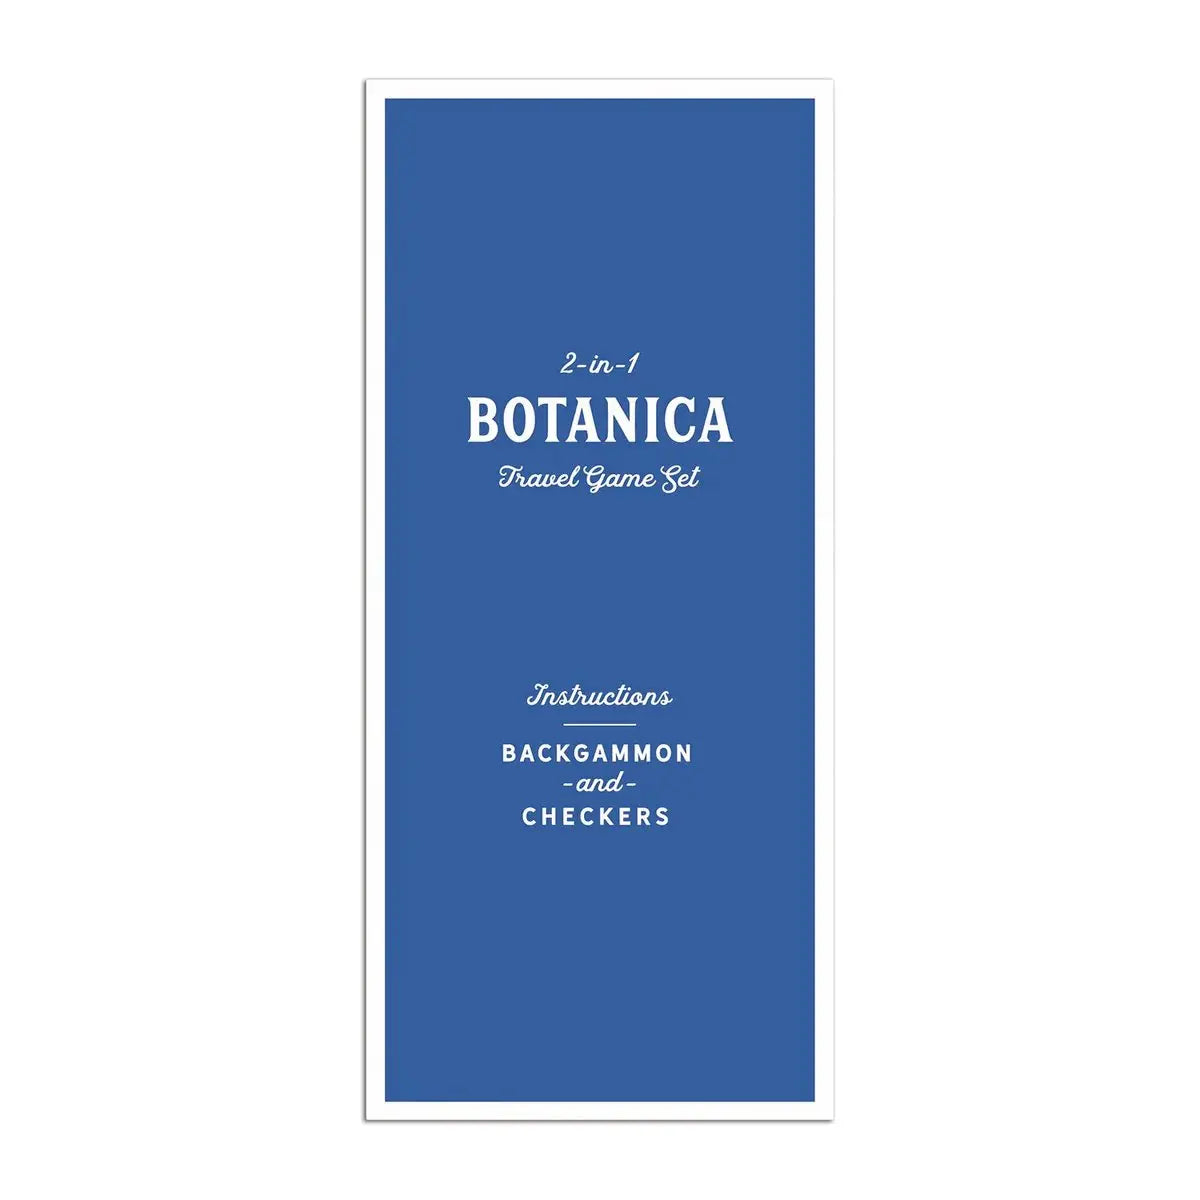 Botanica 2-in-1 Travel Game Set